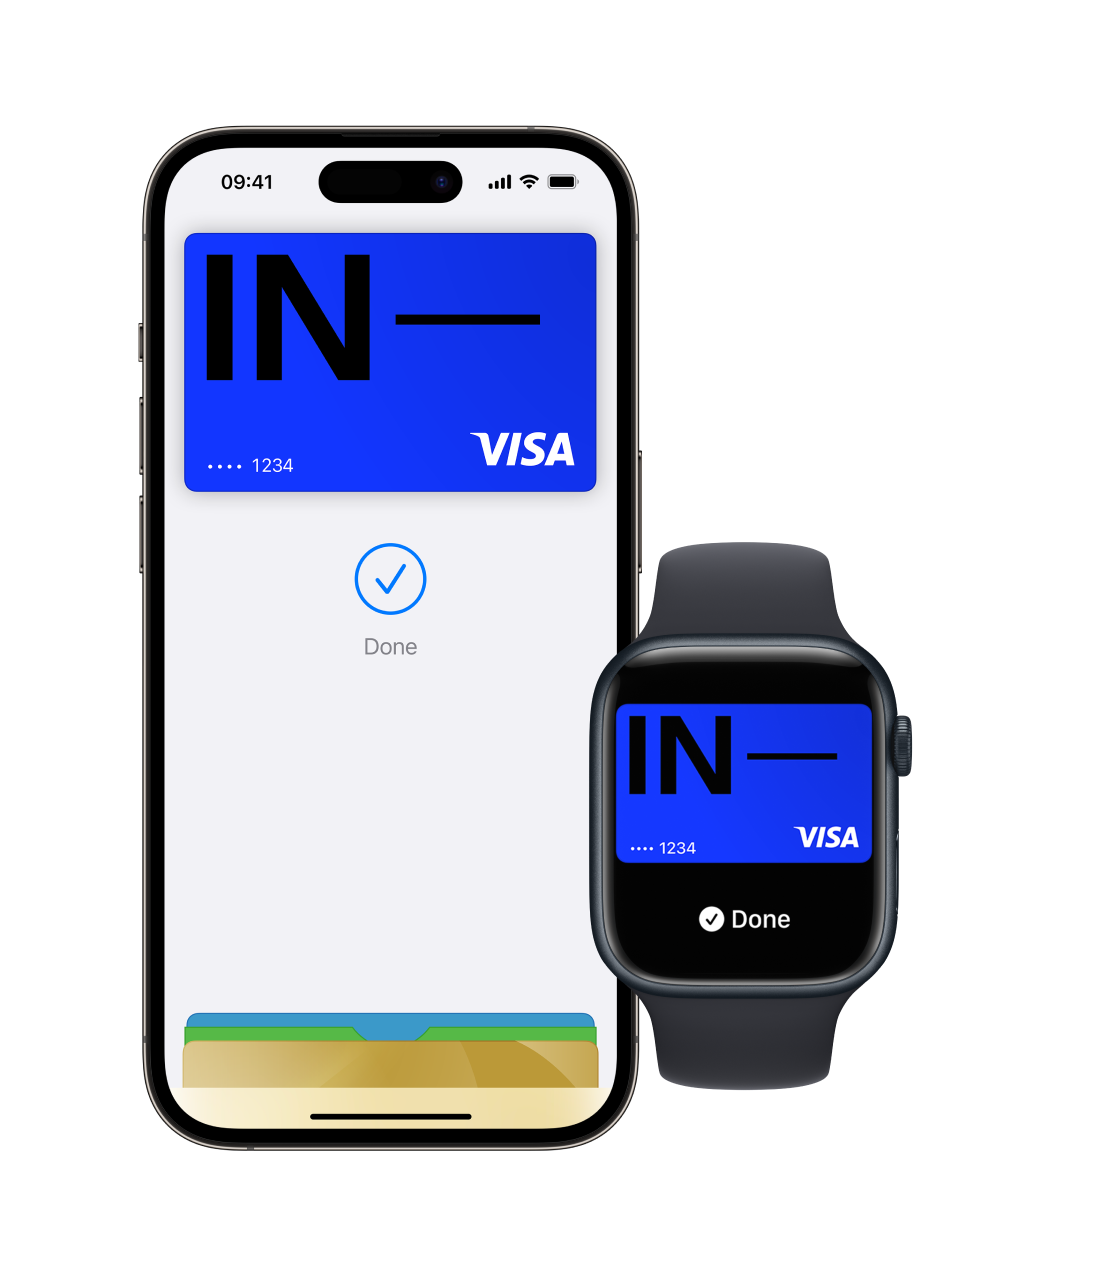 Imagem de um iPhone e um Apple Watch mostrando o aplicativo Apple Wallet e vários cartões com o cartão Incharge colocado na parte superior. Esta imagem mostra o recurso Apple Pay com funcionalidade de carteira digital.